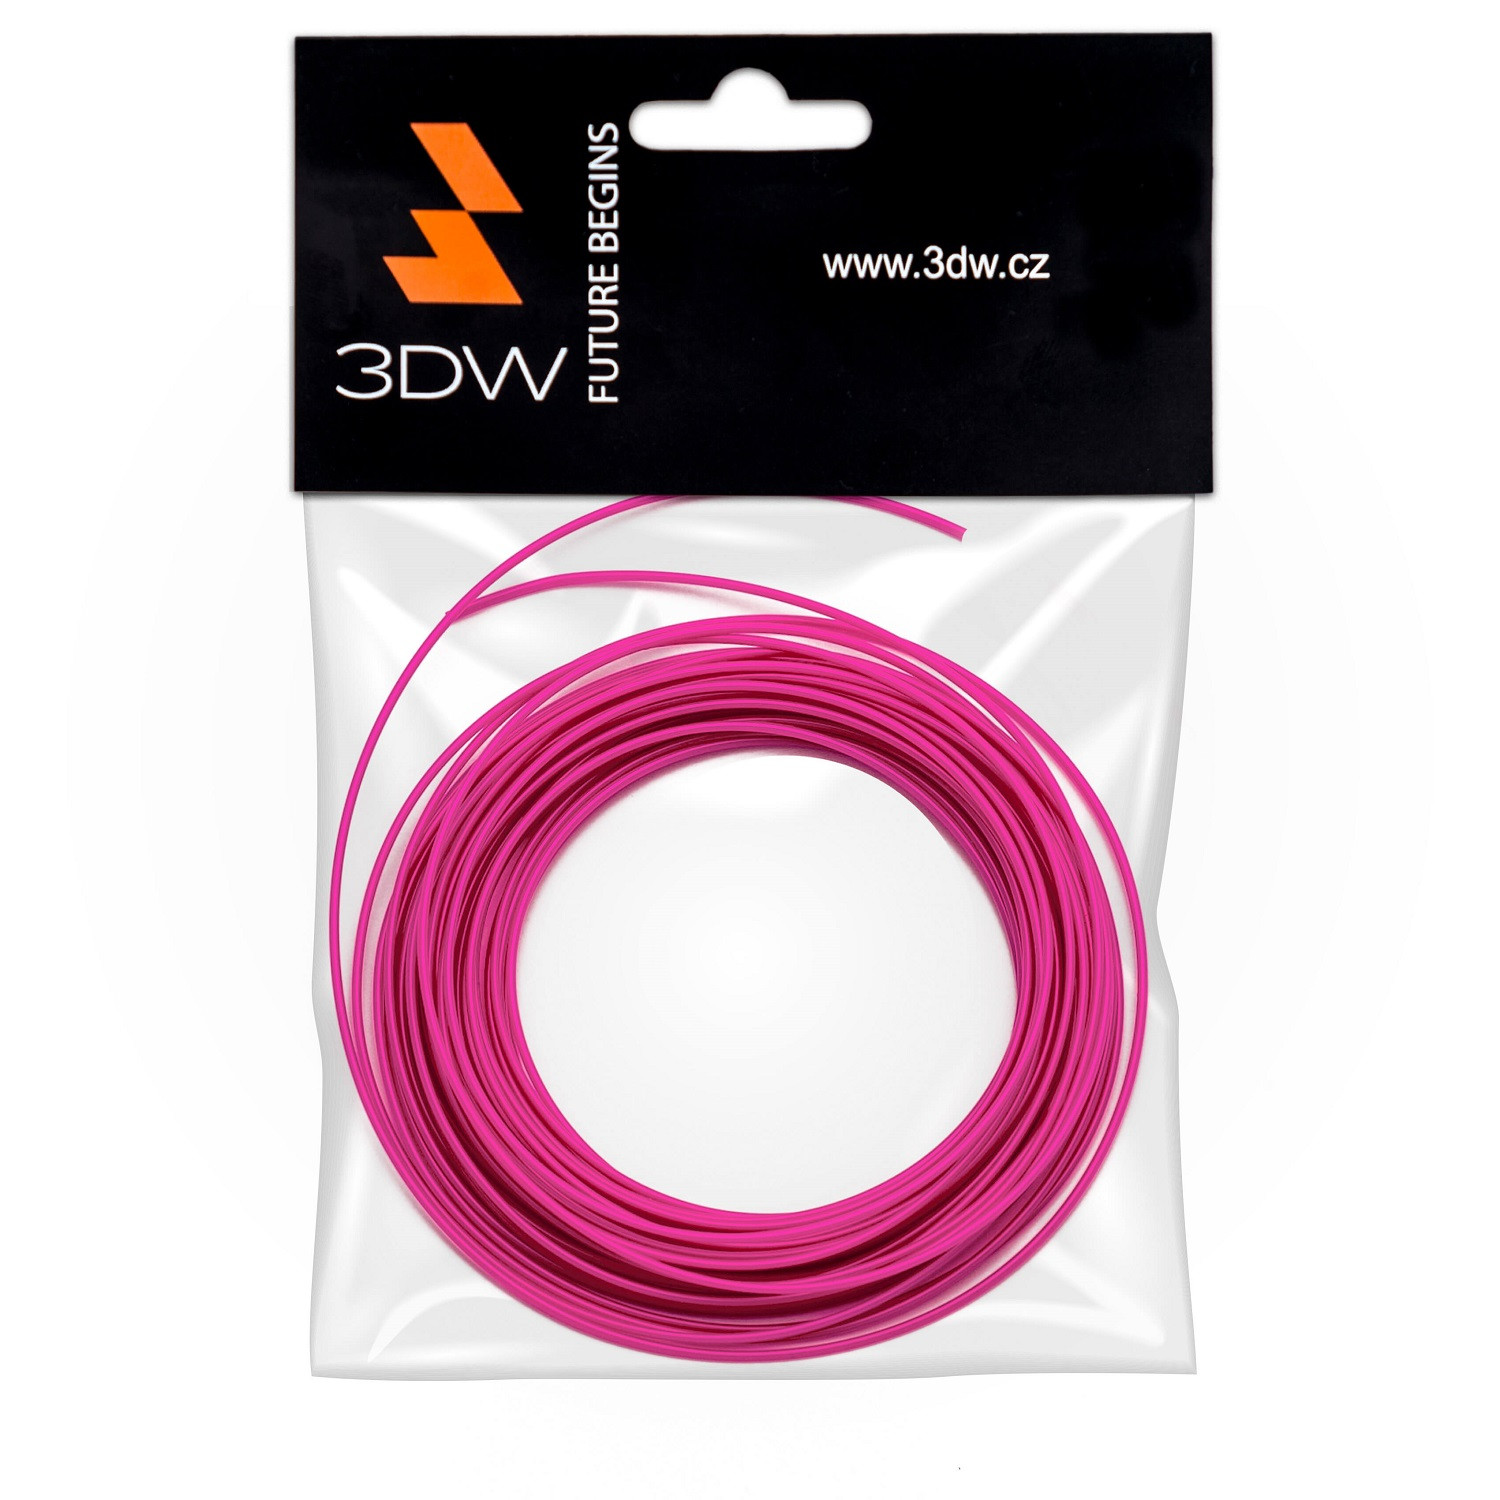 Levně 3DW - ABS filament 1,75mm růžová,10m, tisk 200-230°C